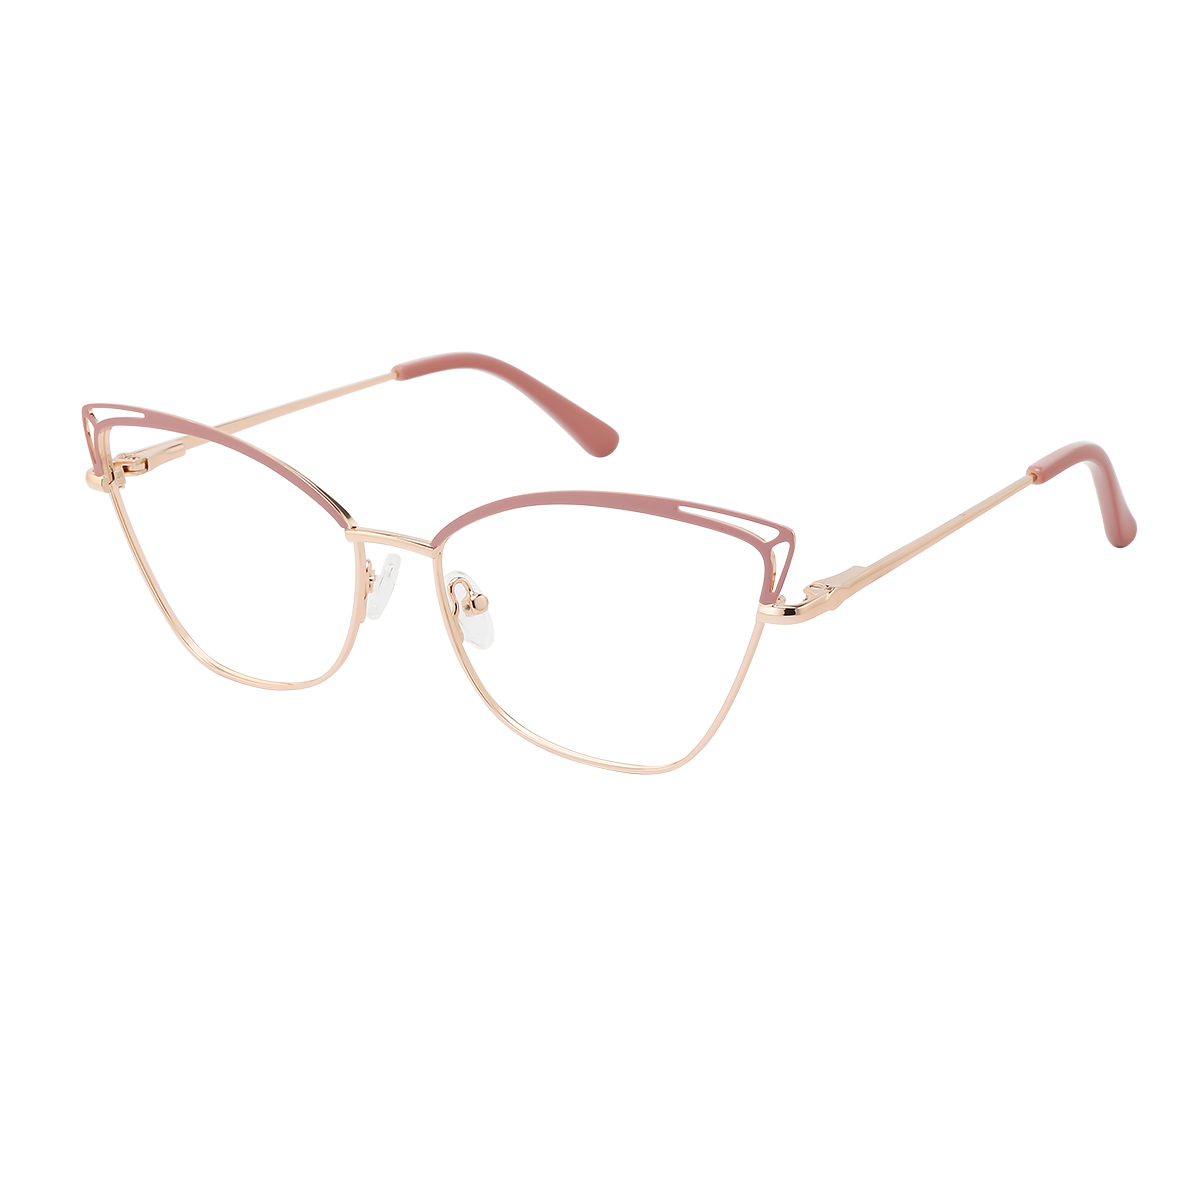 Ellen - Cat-eye Rose Gold/Pink Reading Glasses for Women